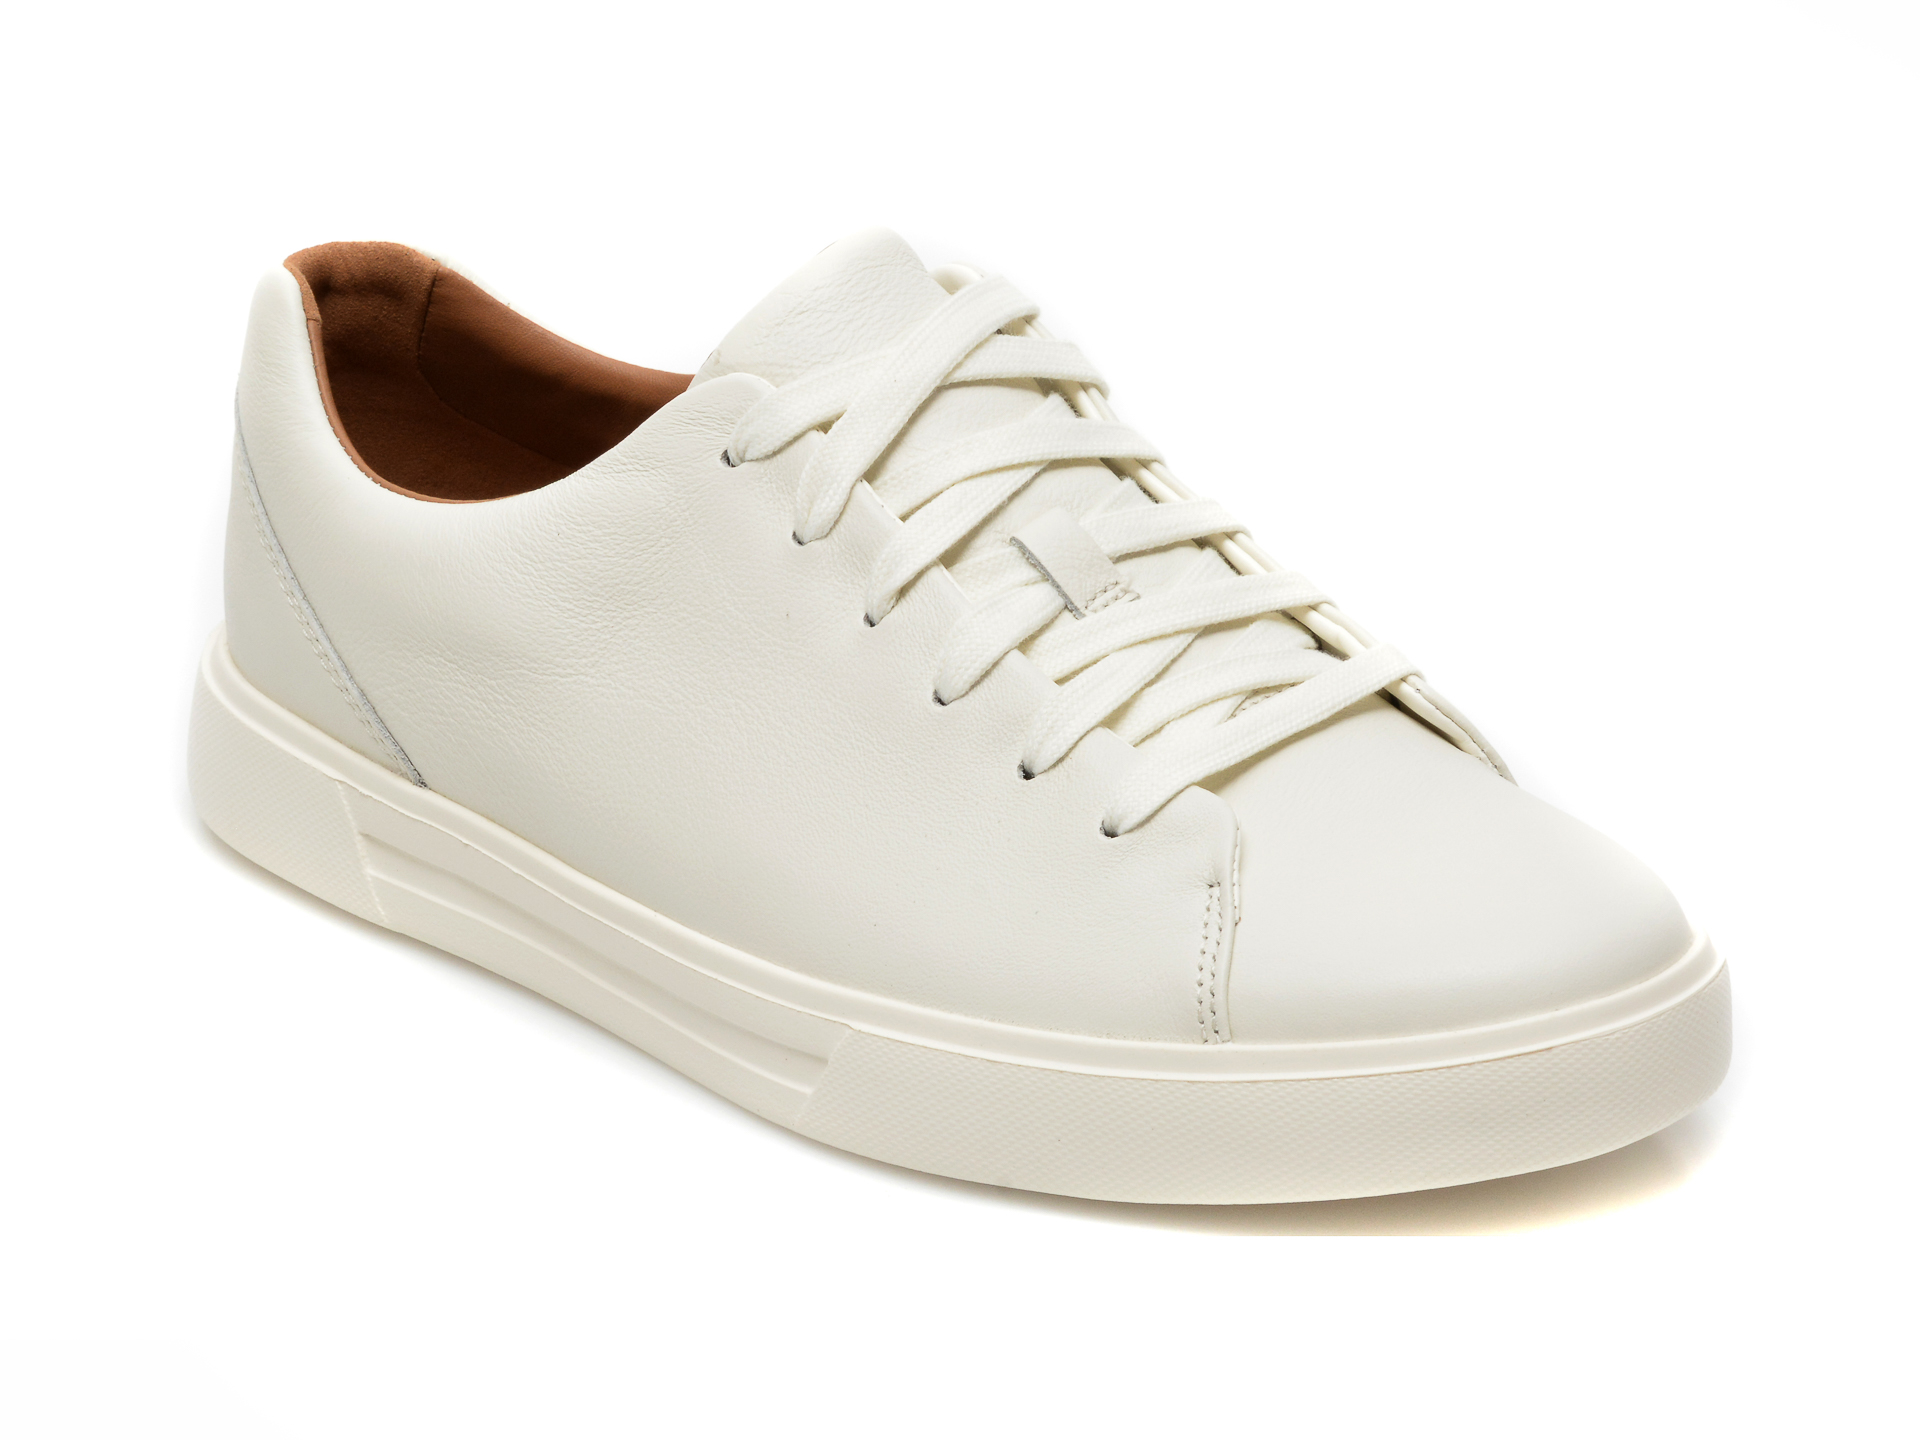 Pantofi sport CLARKS albi, UN COSTA LACE, din piele naturala